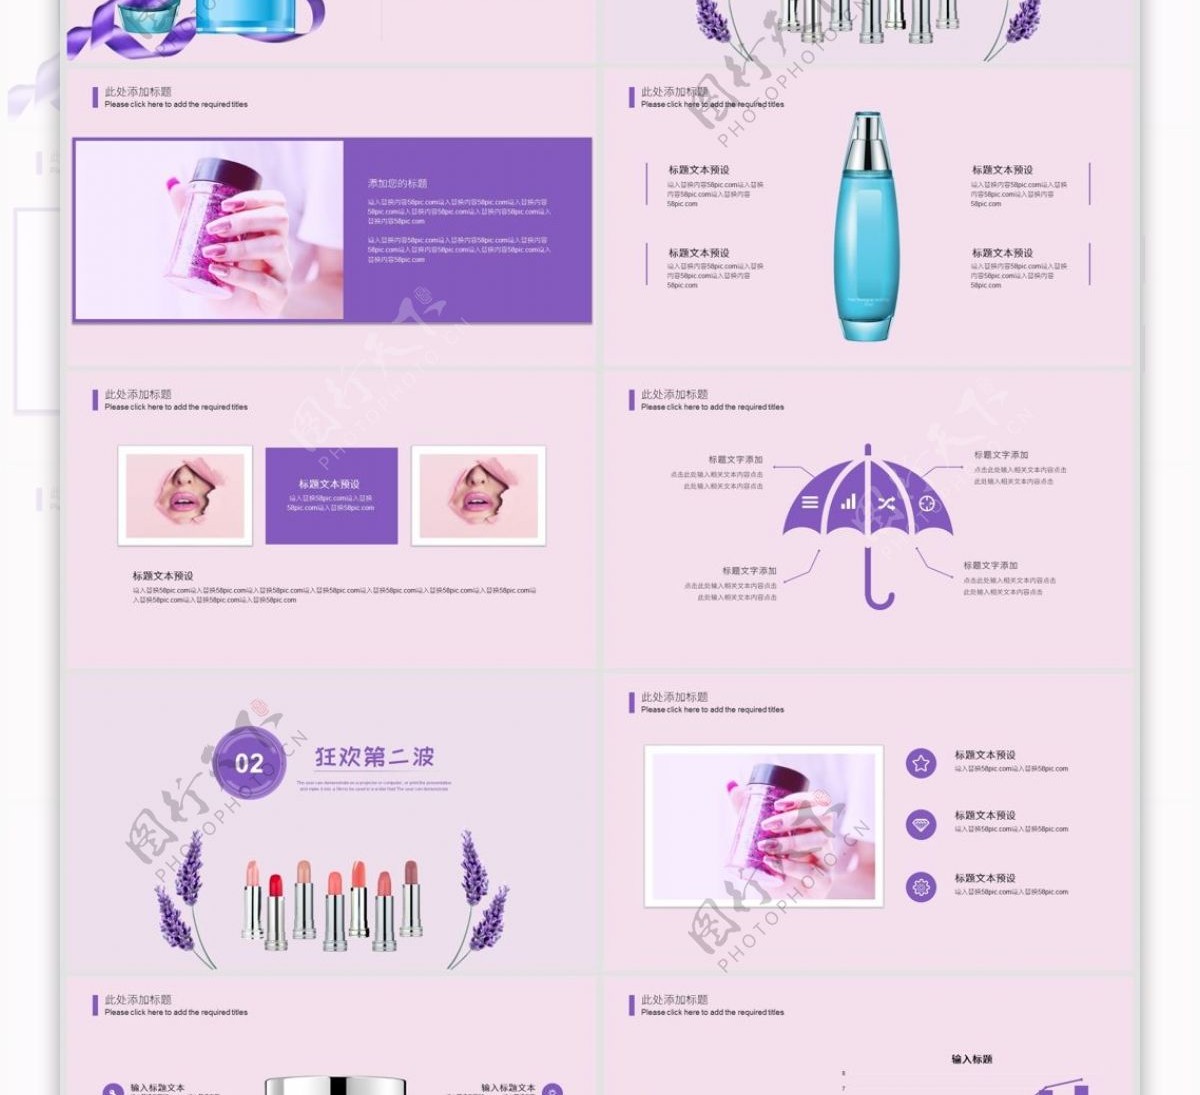 紫色浪漫双十一美妆节营销策划PPT模板